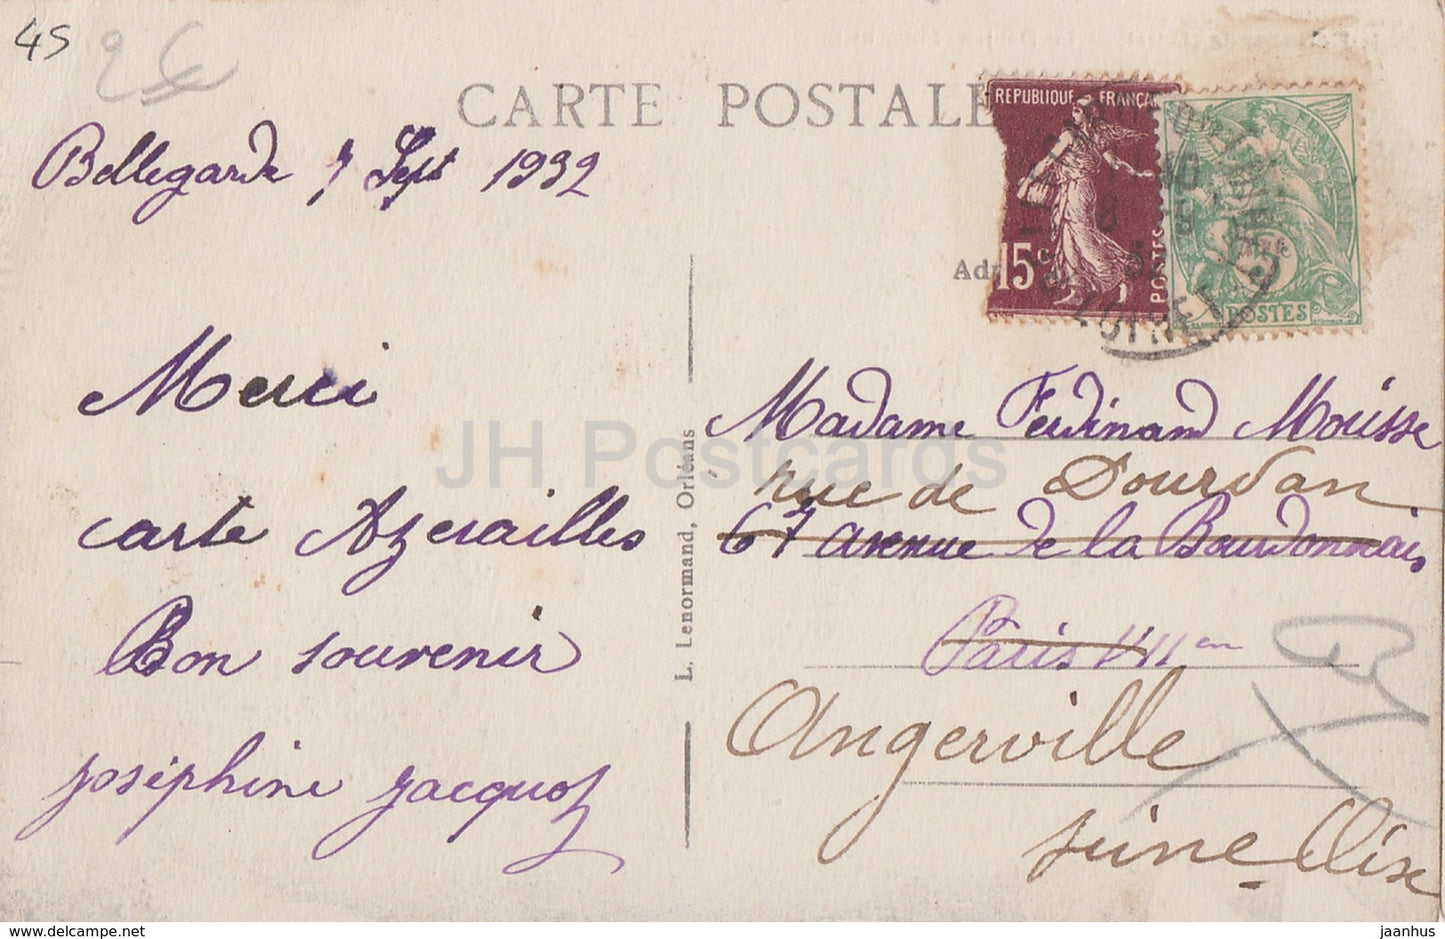 Bellegarde - Le Donjon - castle - old postcard - 1932 - France - used